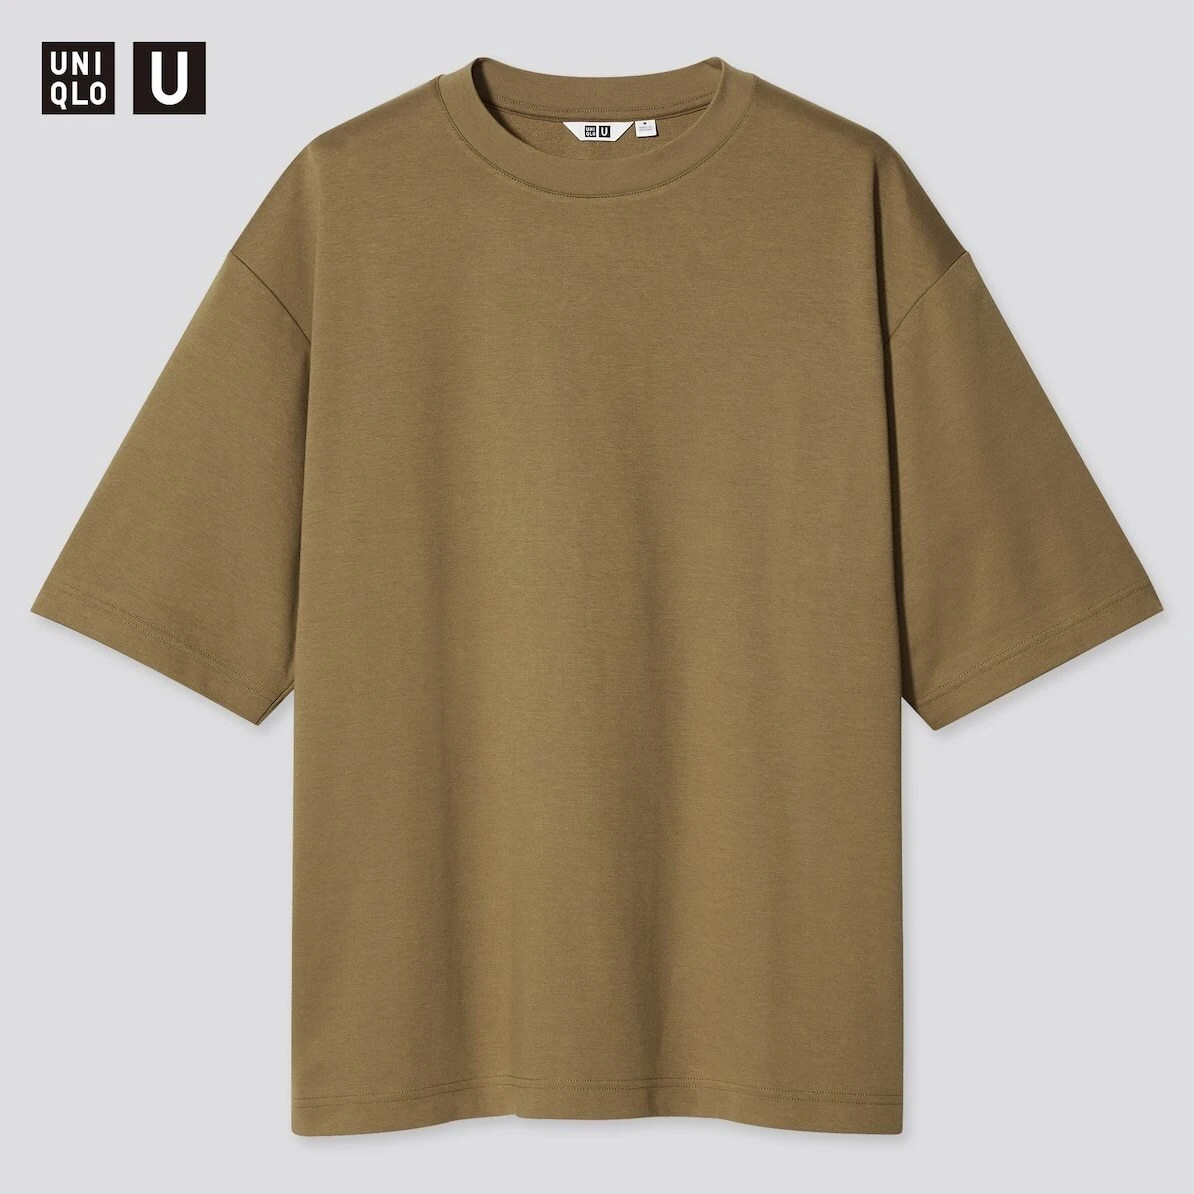 ユニクロ　uniqlo　ユニクロユー　uniqlou　メンズ　Tシャツ　トップス　人気　再登場　2021　春　夏　おすすめ　オススメ　サイズ　色　カラー　アイテム　ブラウン　茶色